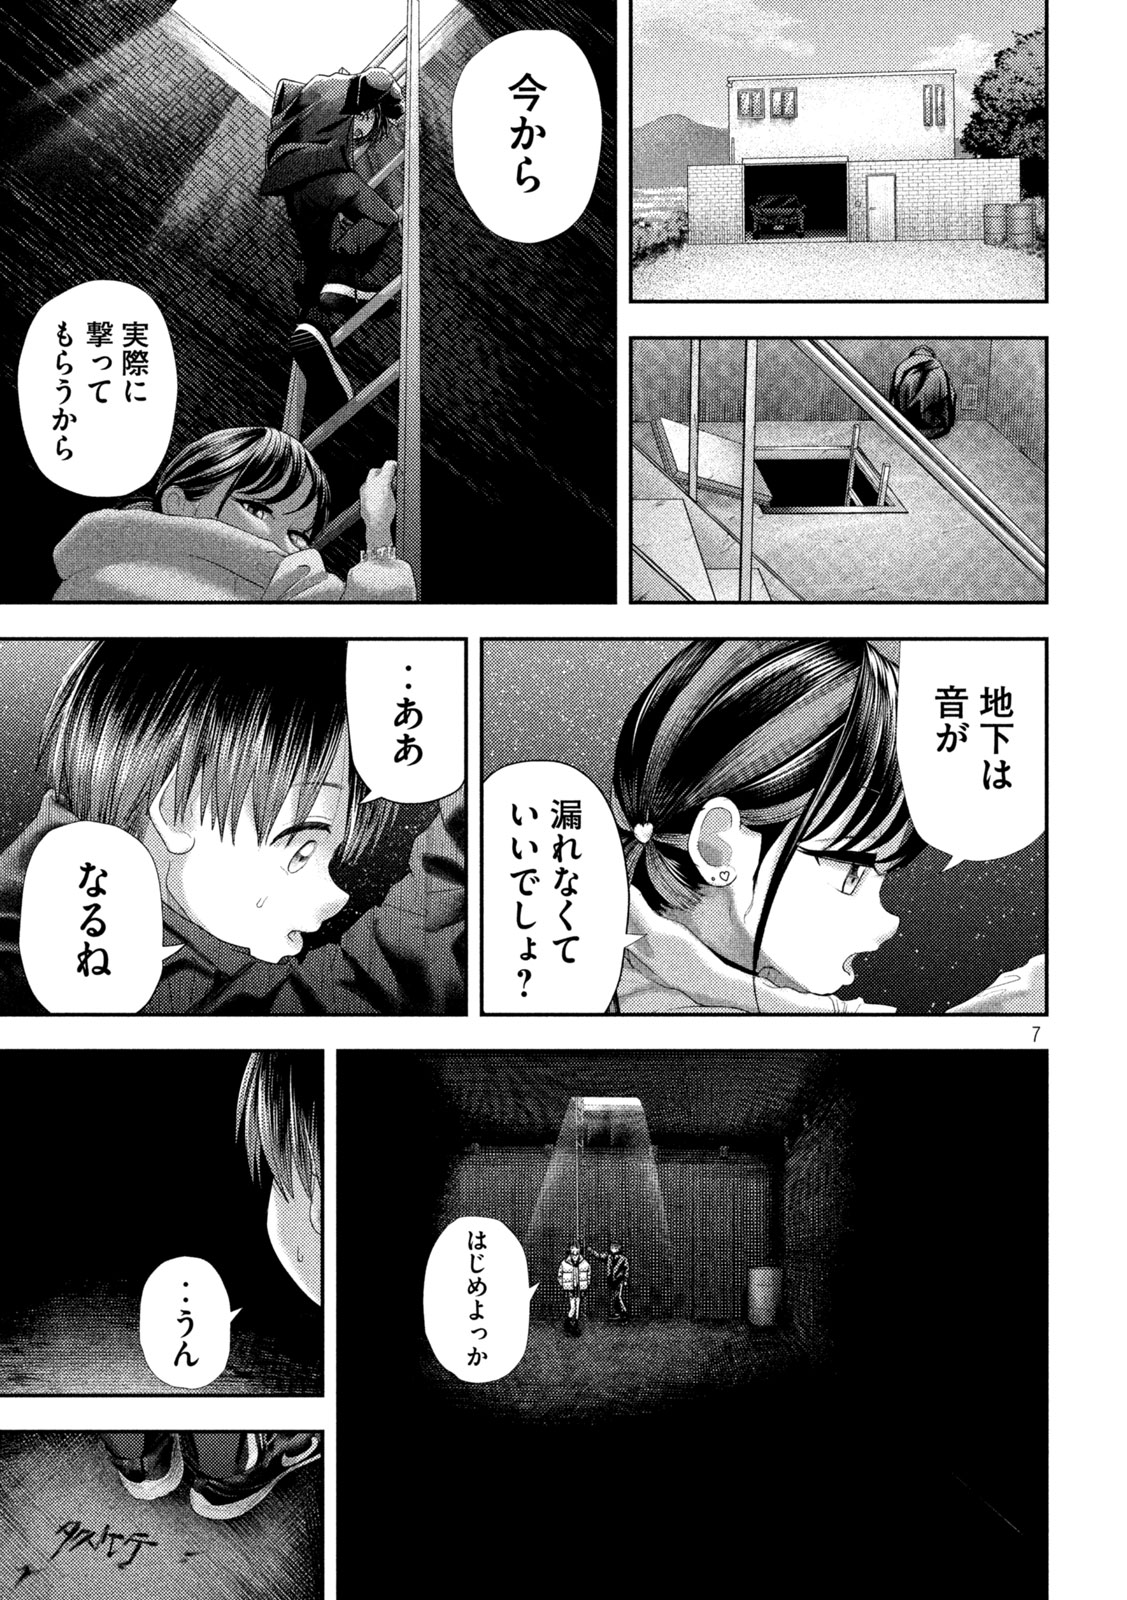 Nezumi no Koi - Chapter 32 - Page 7